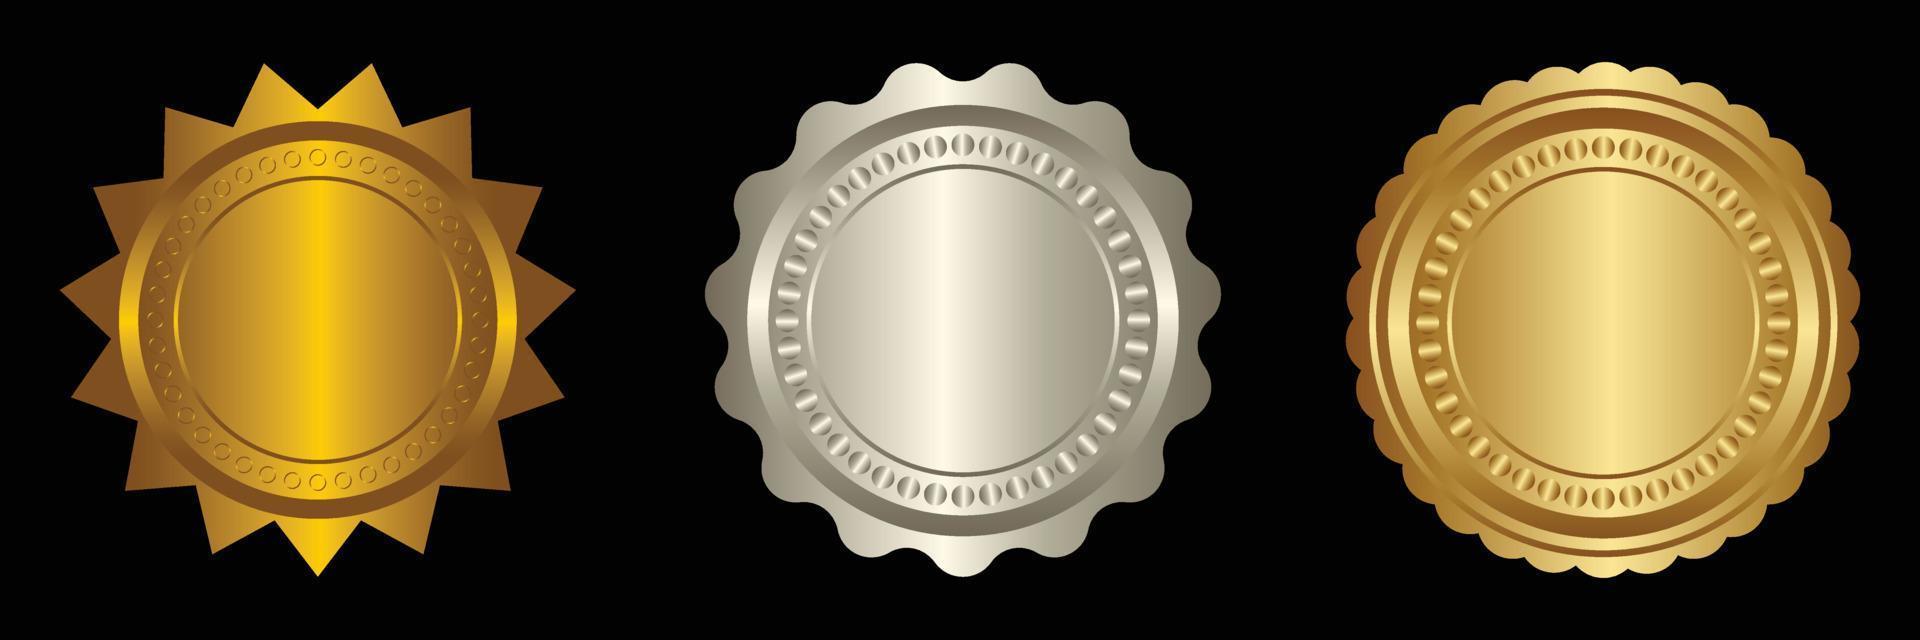 ensemble vecteur rond d'or et argent badge isolé, joint timbre or luxe élégant bannière icône, vecteur illustration certificat argent déjouer joint ou médaille isolé.